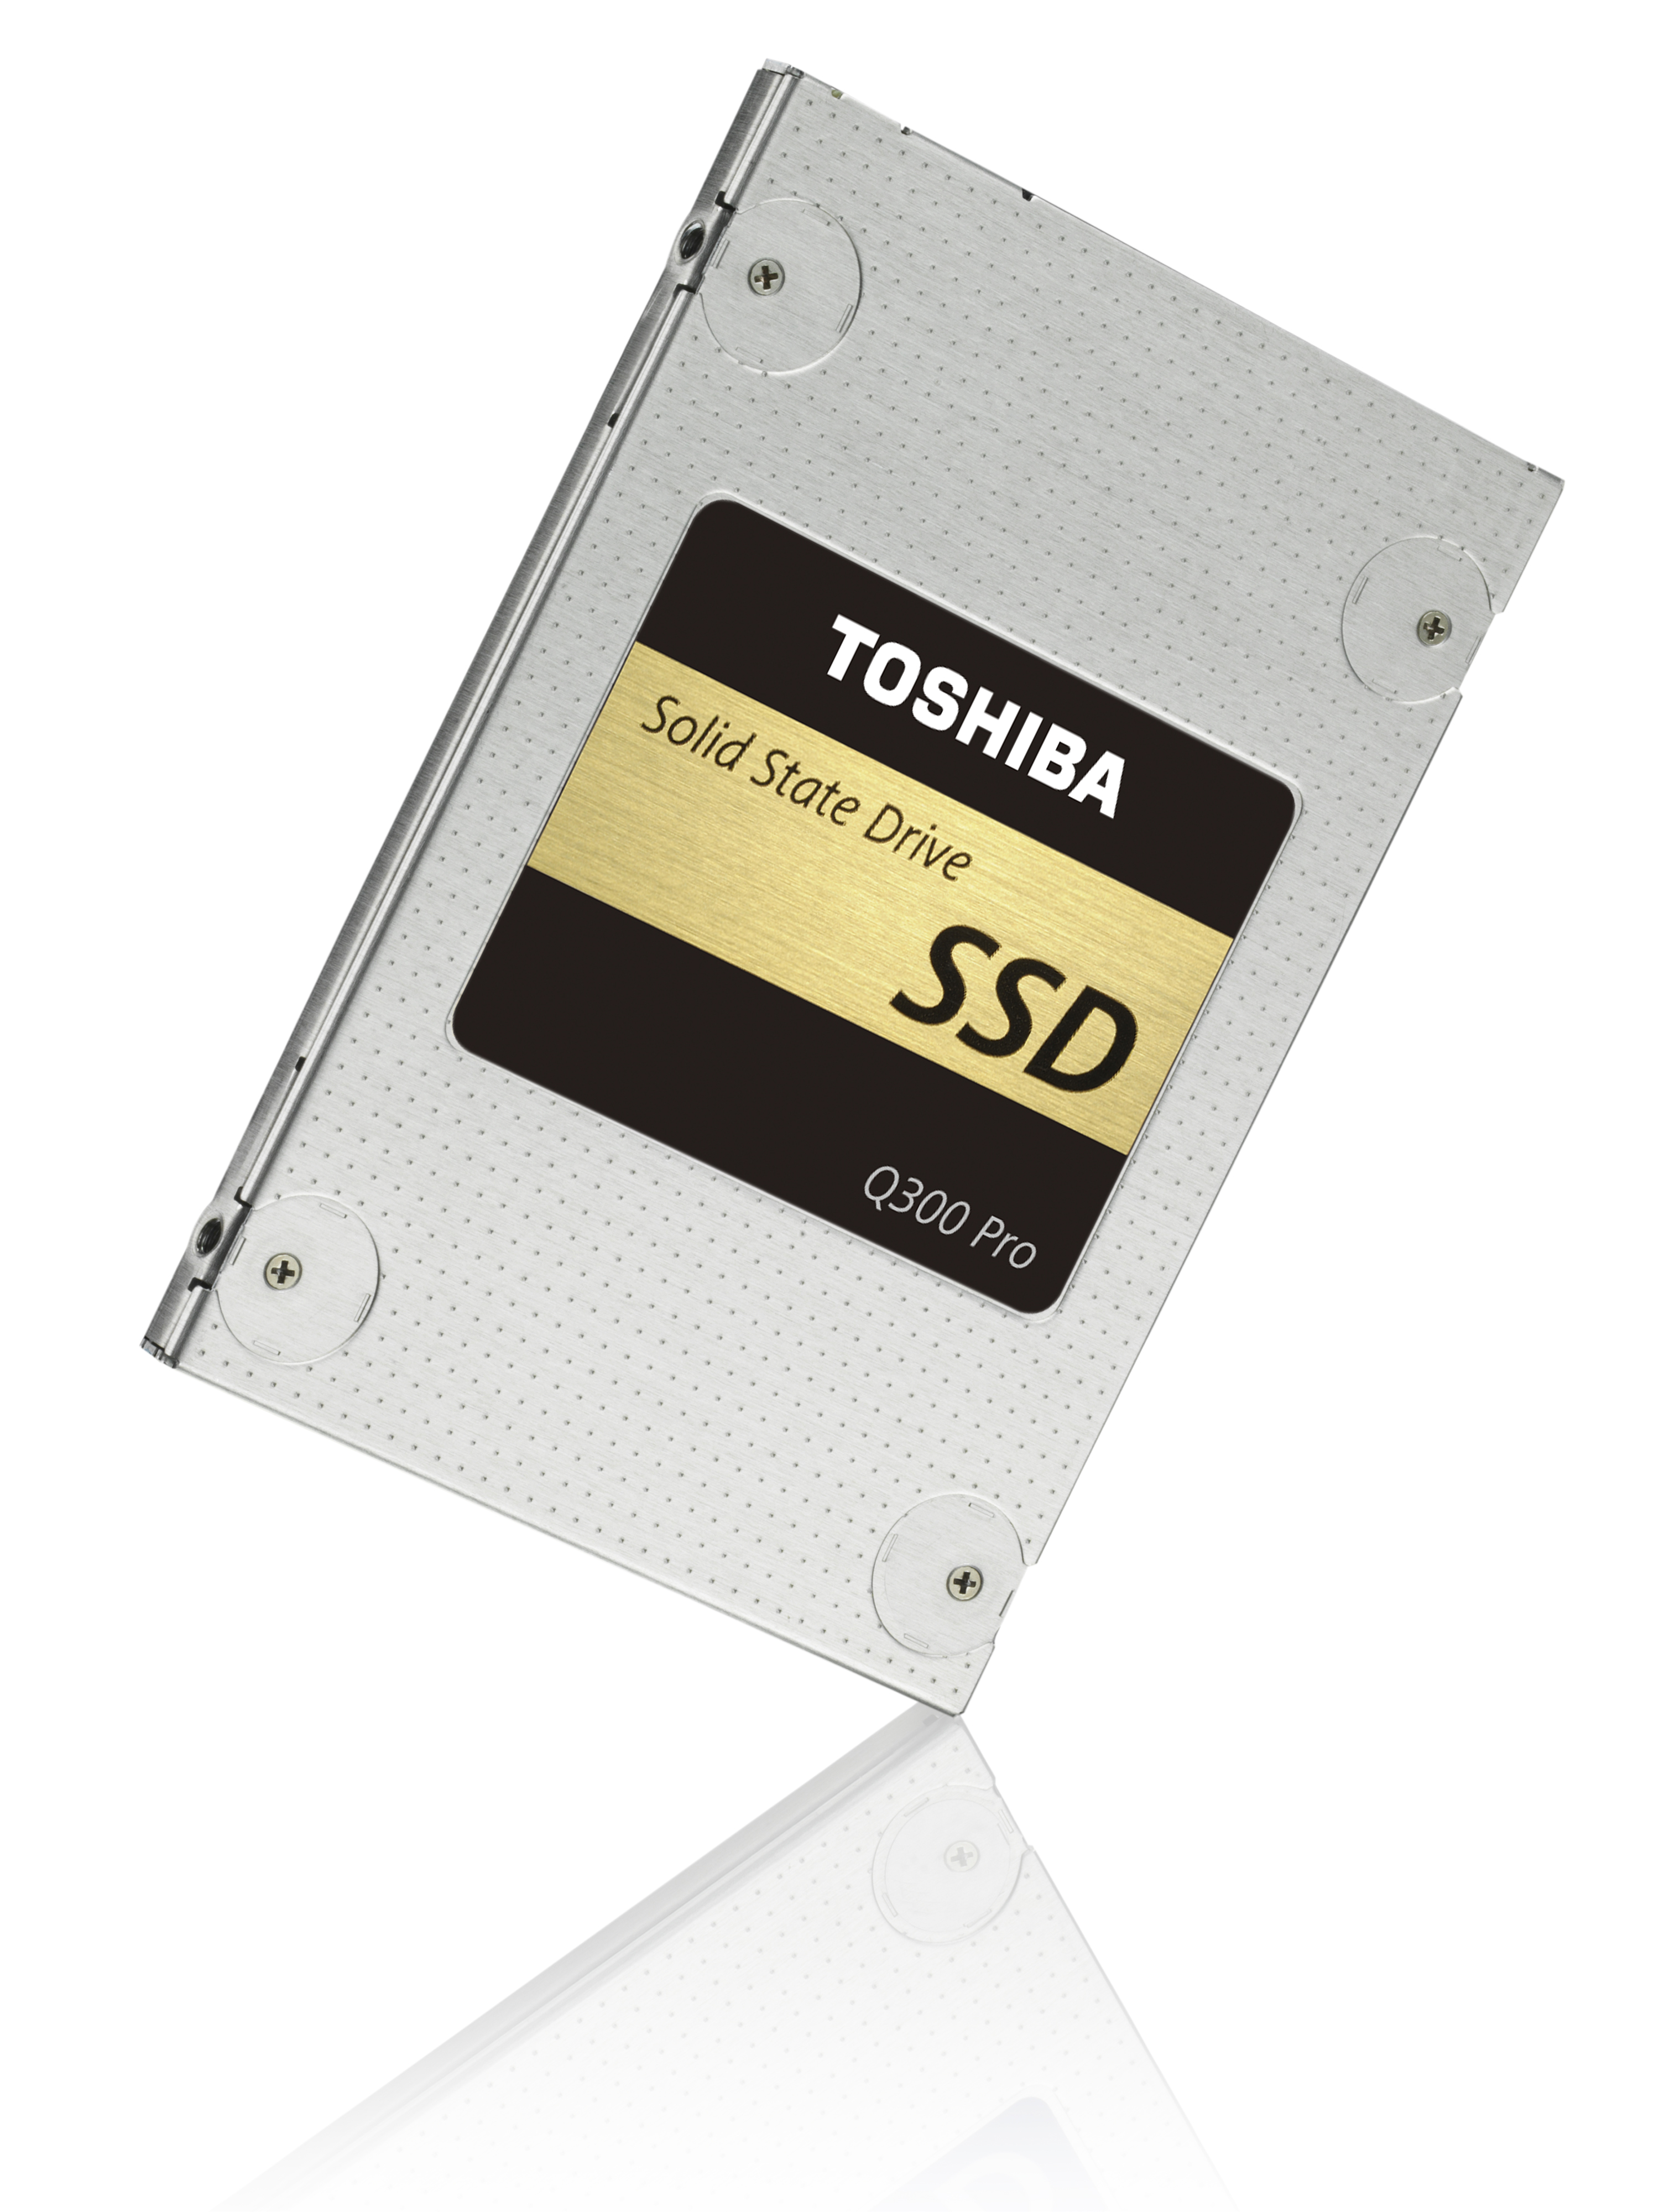 SSD_Q300Pro_04